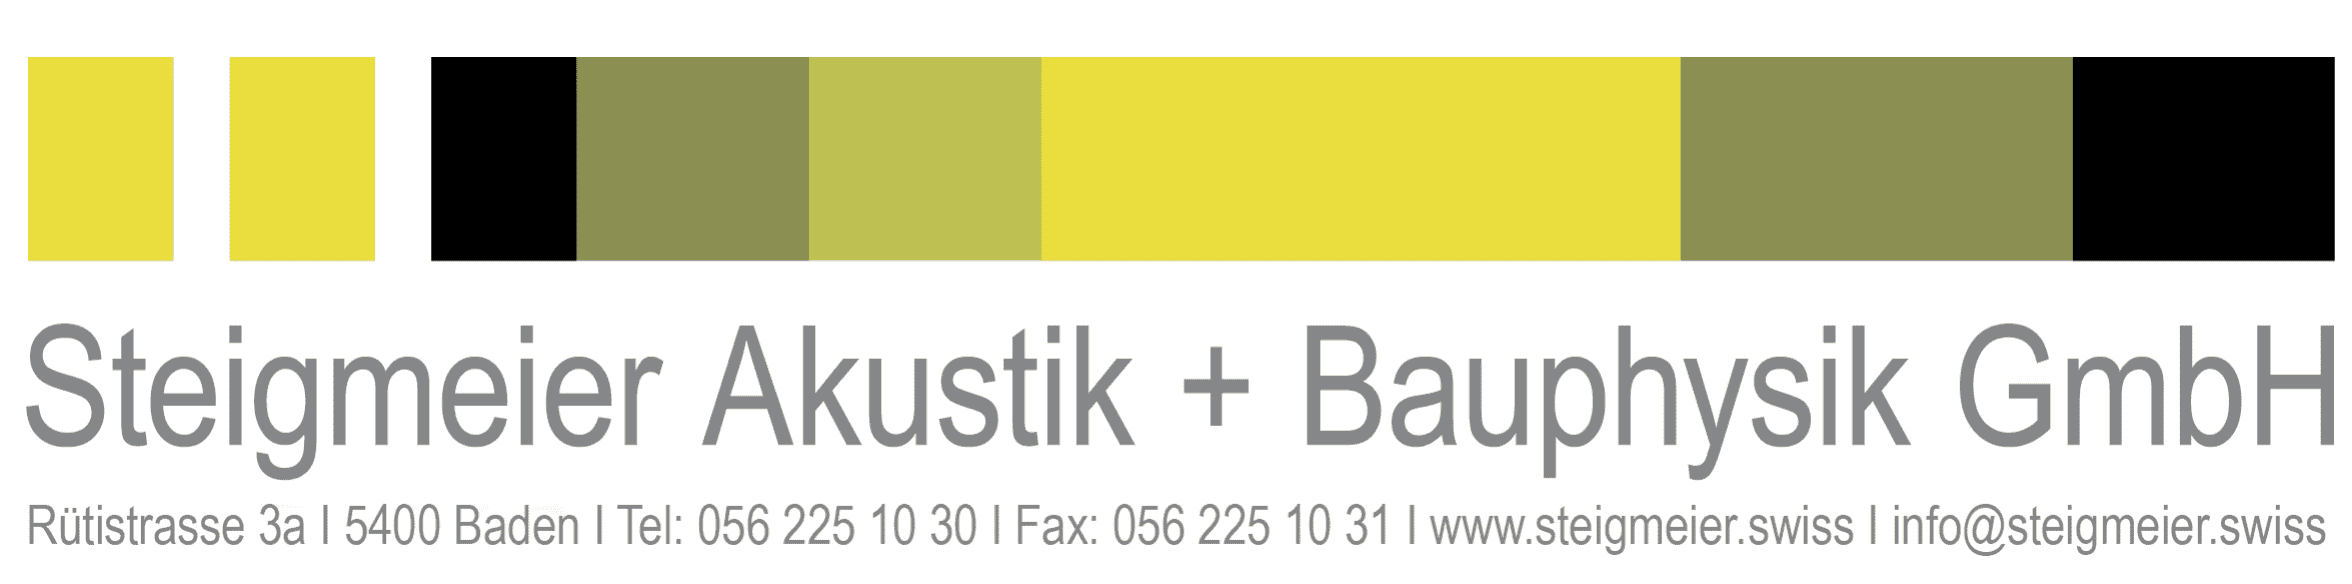 Steigmeier Akustik und Bauphysik GmbH